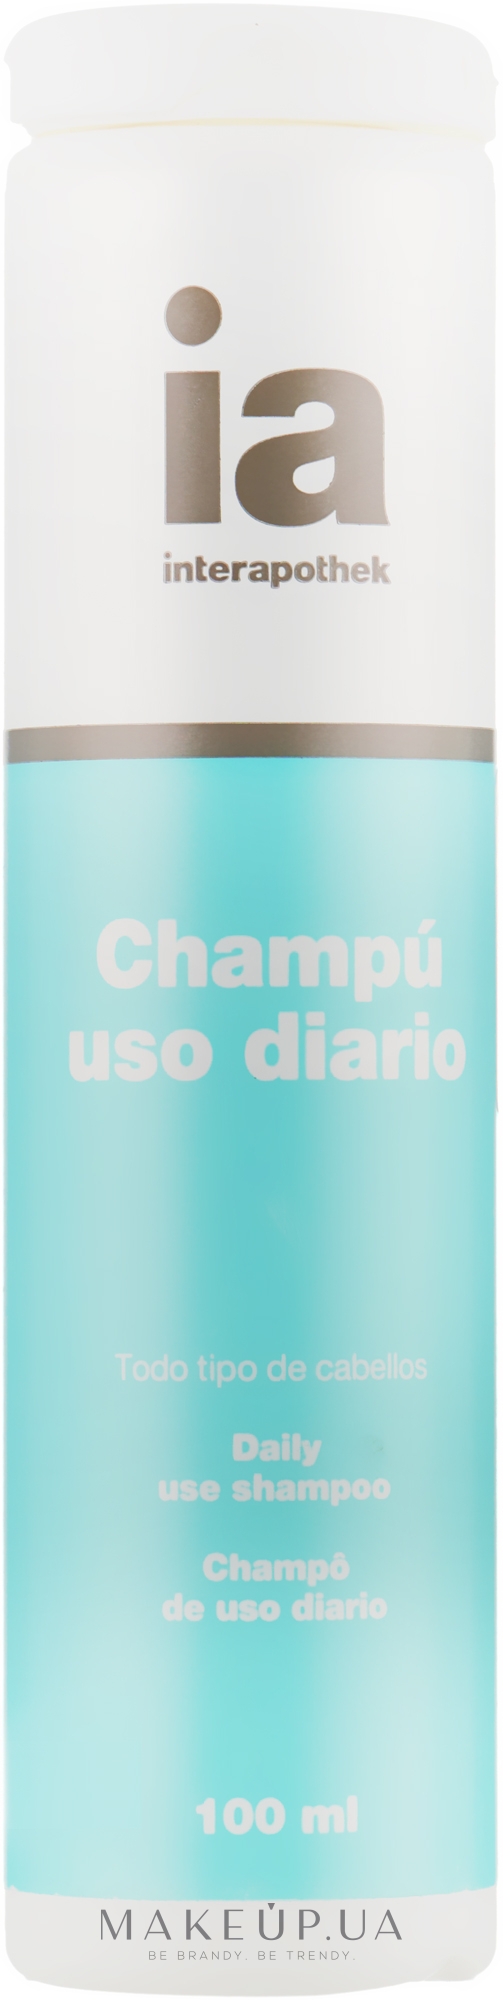 Шампунь для волос с экстрактом шелка - Interapothek Champu Uso Frecuente  — фото 100ml